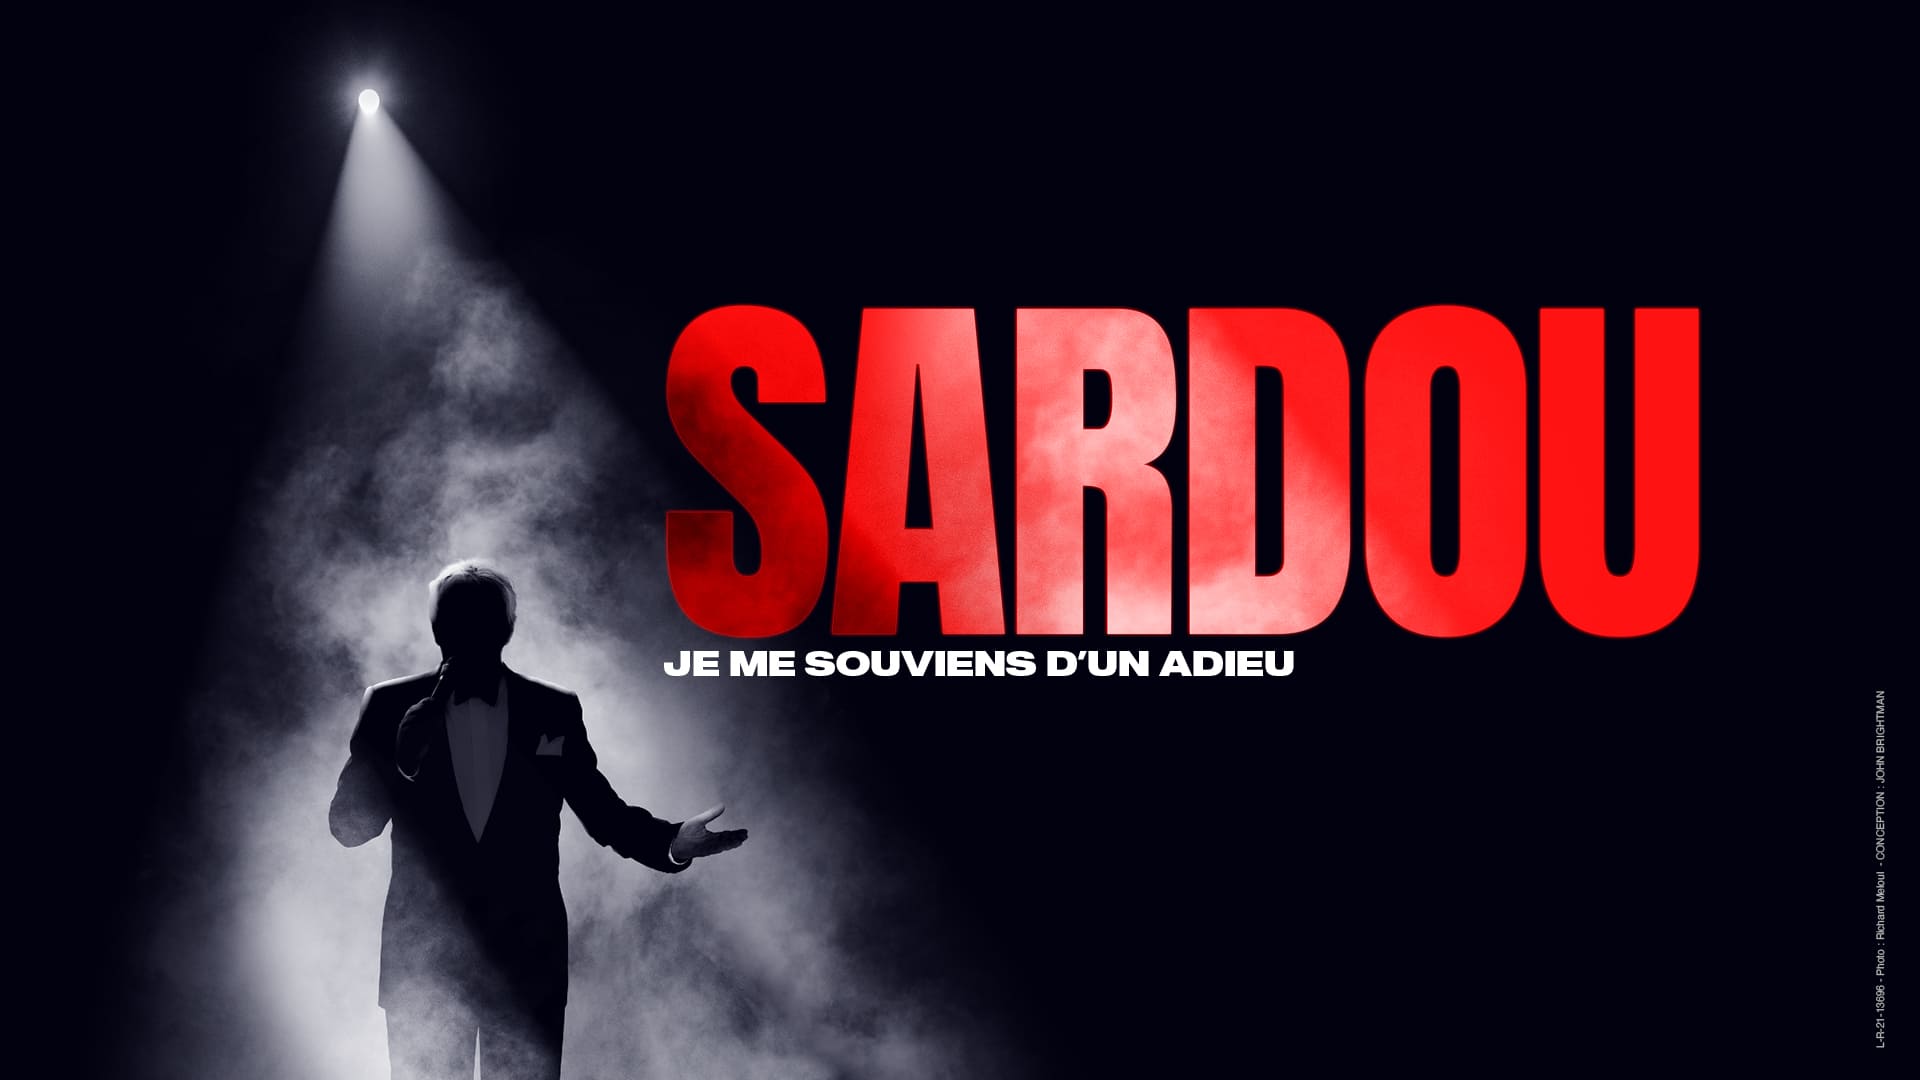 Interview. Michel Sardou se prépare à son retour sur scène dans son manoir  près de Deauville